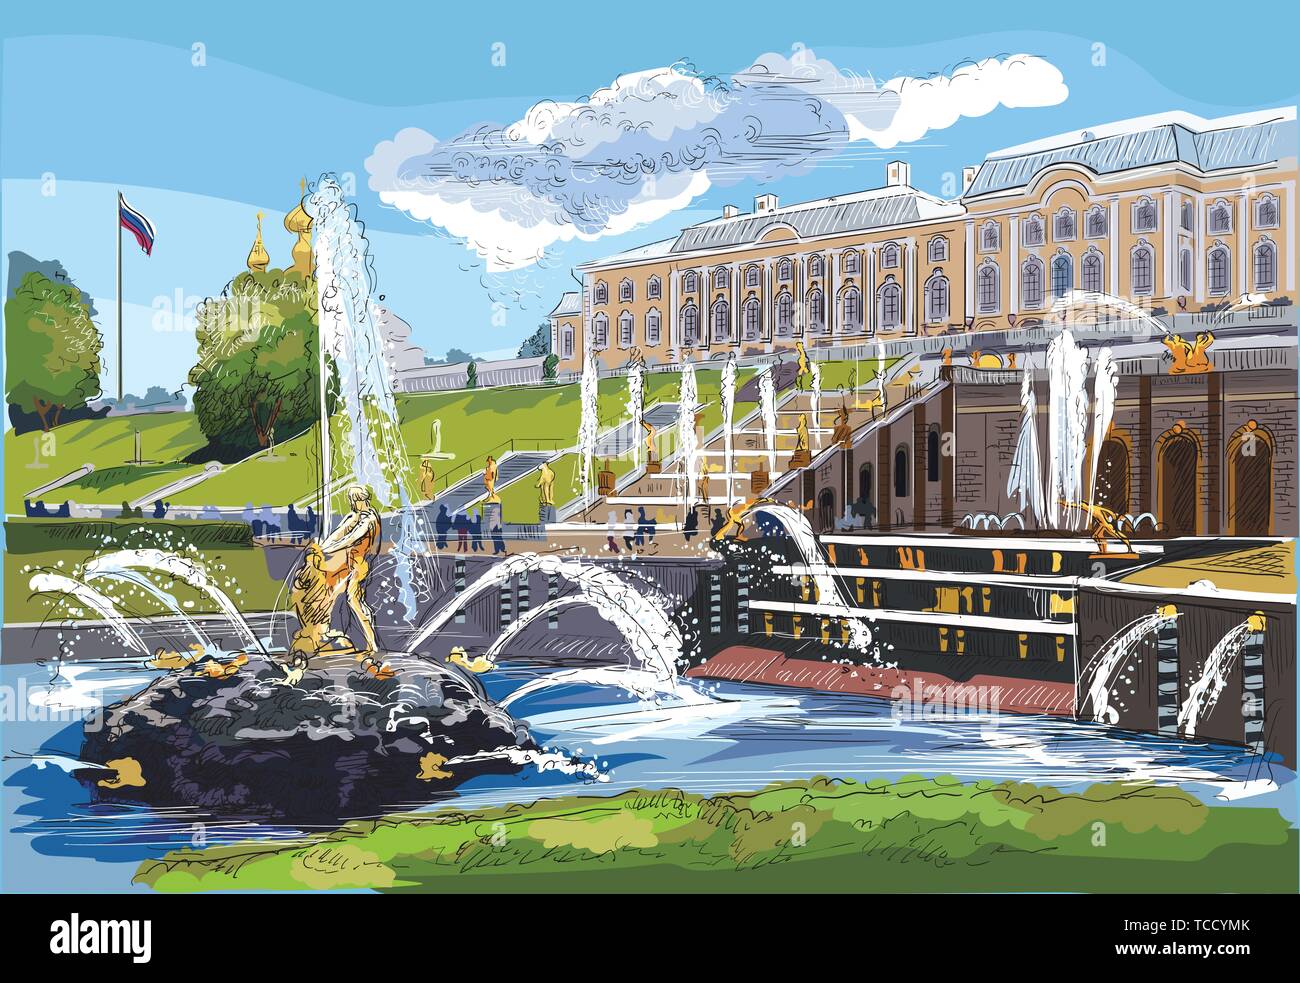 Malerischer Blick auf die Große Kaskade, Skulpturen und Springbrunnen auf Schloss Peterhof in St. Petersburg, Russland. Bunte isoliert Vektor Handzeichnung illus Stock Vektor